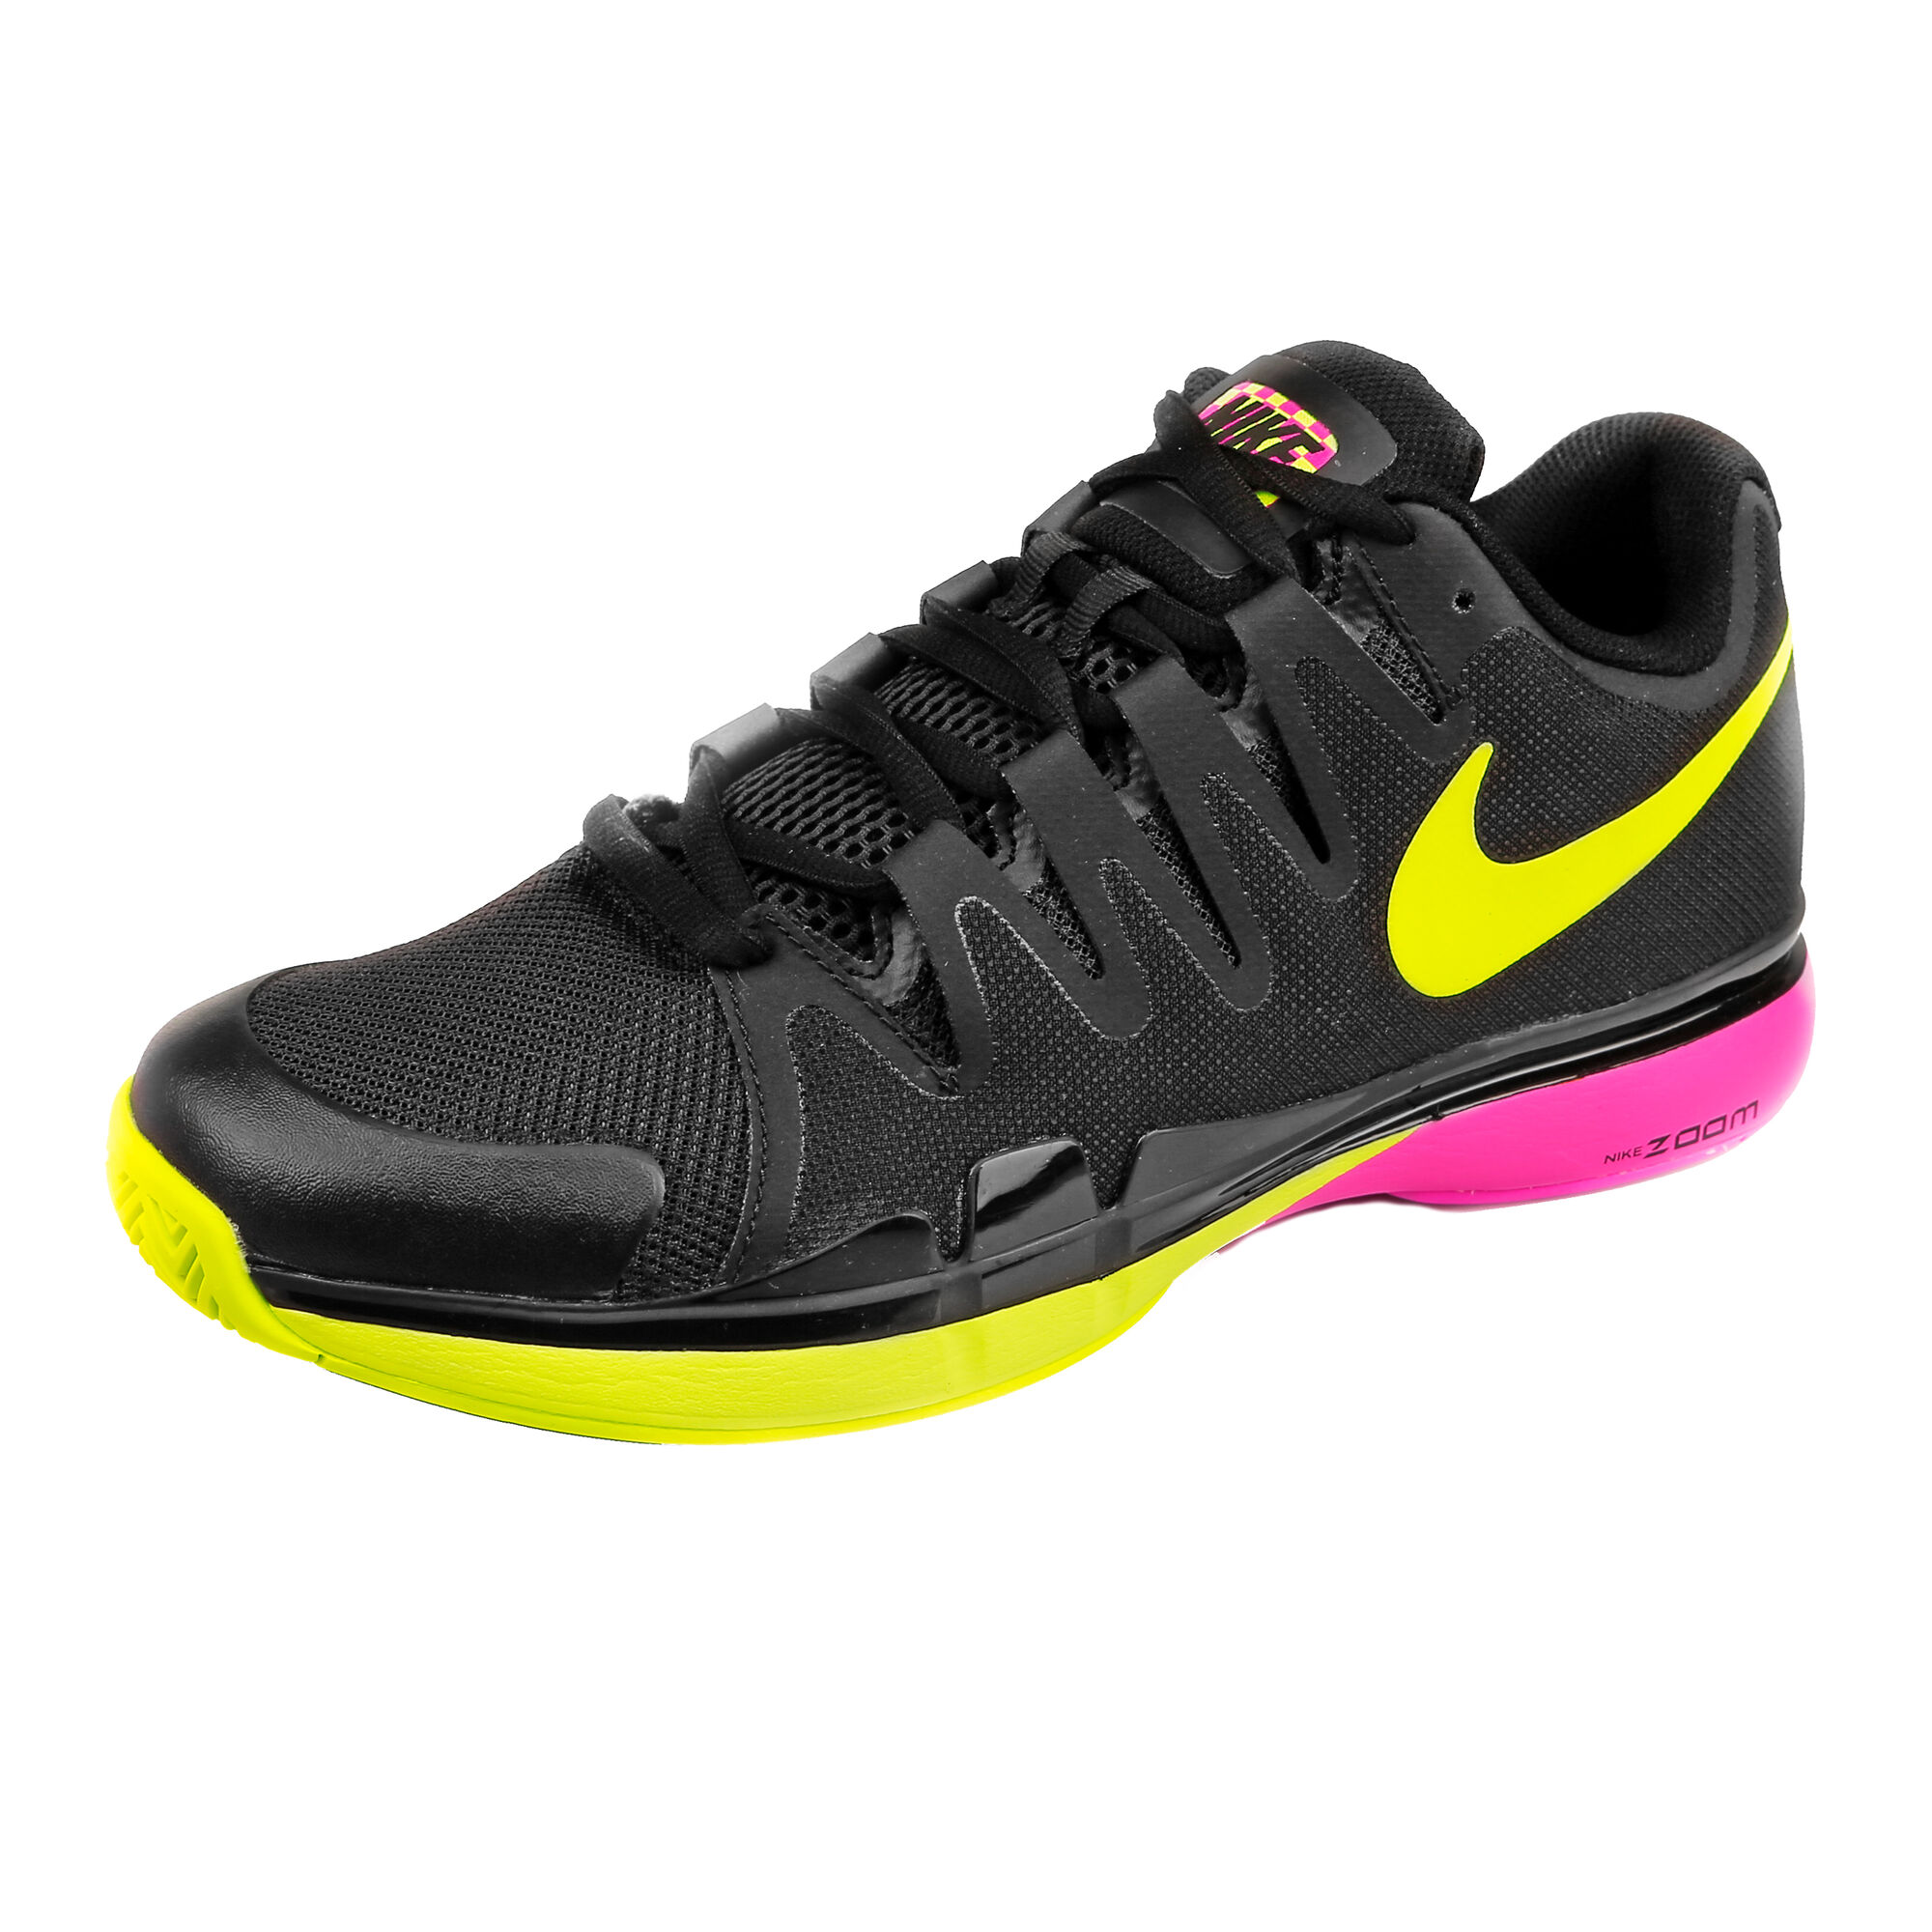 Buy Nike Roger Federer Zoom Vapor 9.5 Tour All Court Shoe Men Black ...